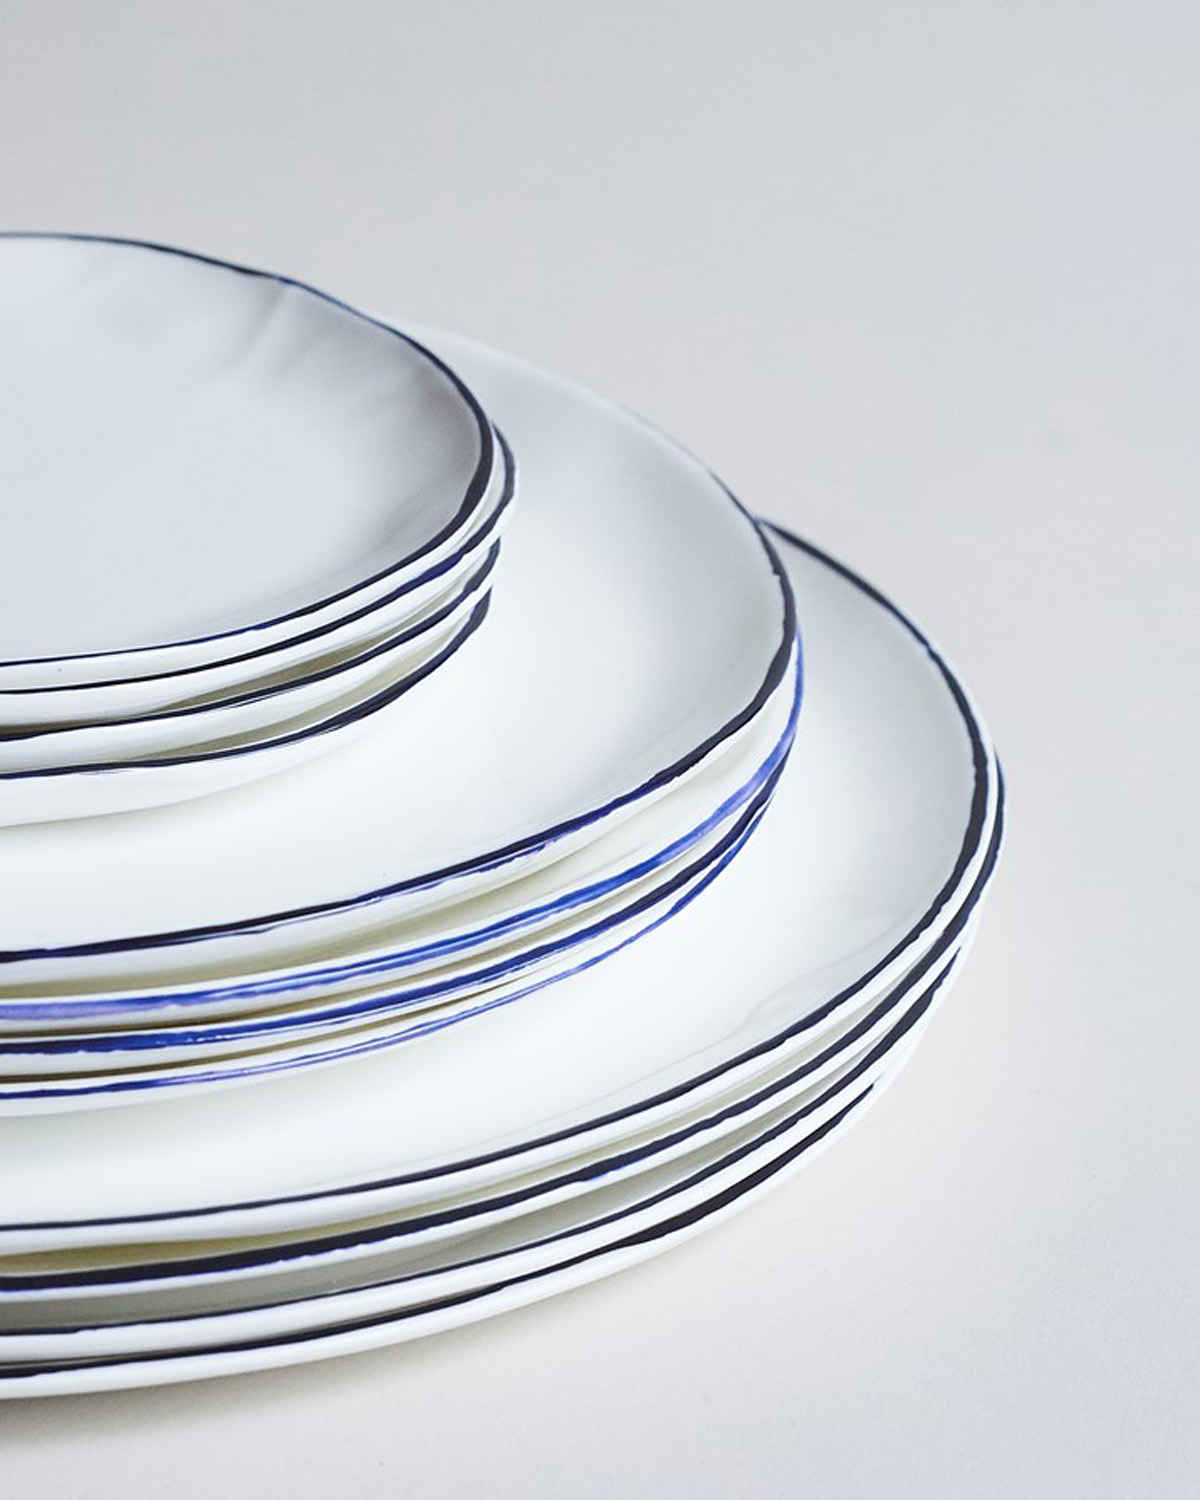 Plate edges by Feldspar - artisinal ceramics handmade in the UK